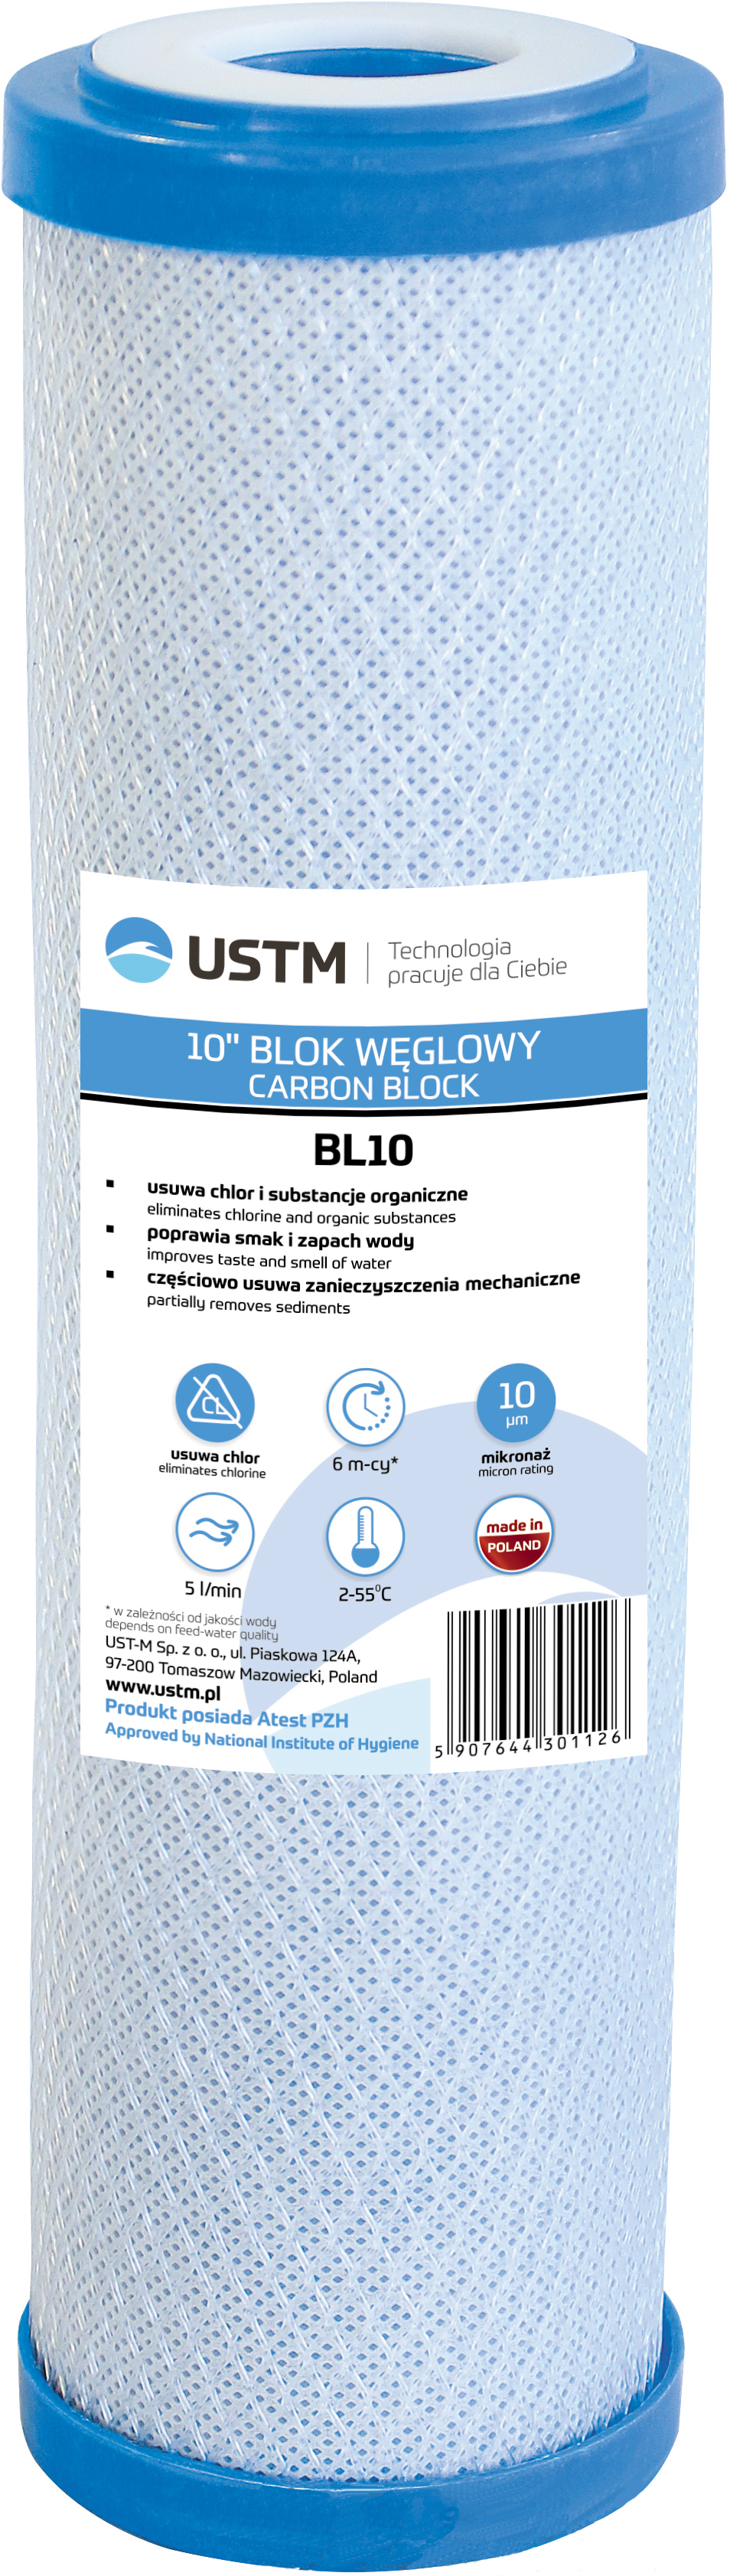 Картридж для фильтра USTM BL10 в интернет-магазине, главное фото